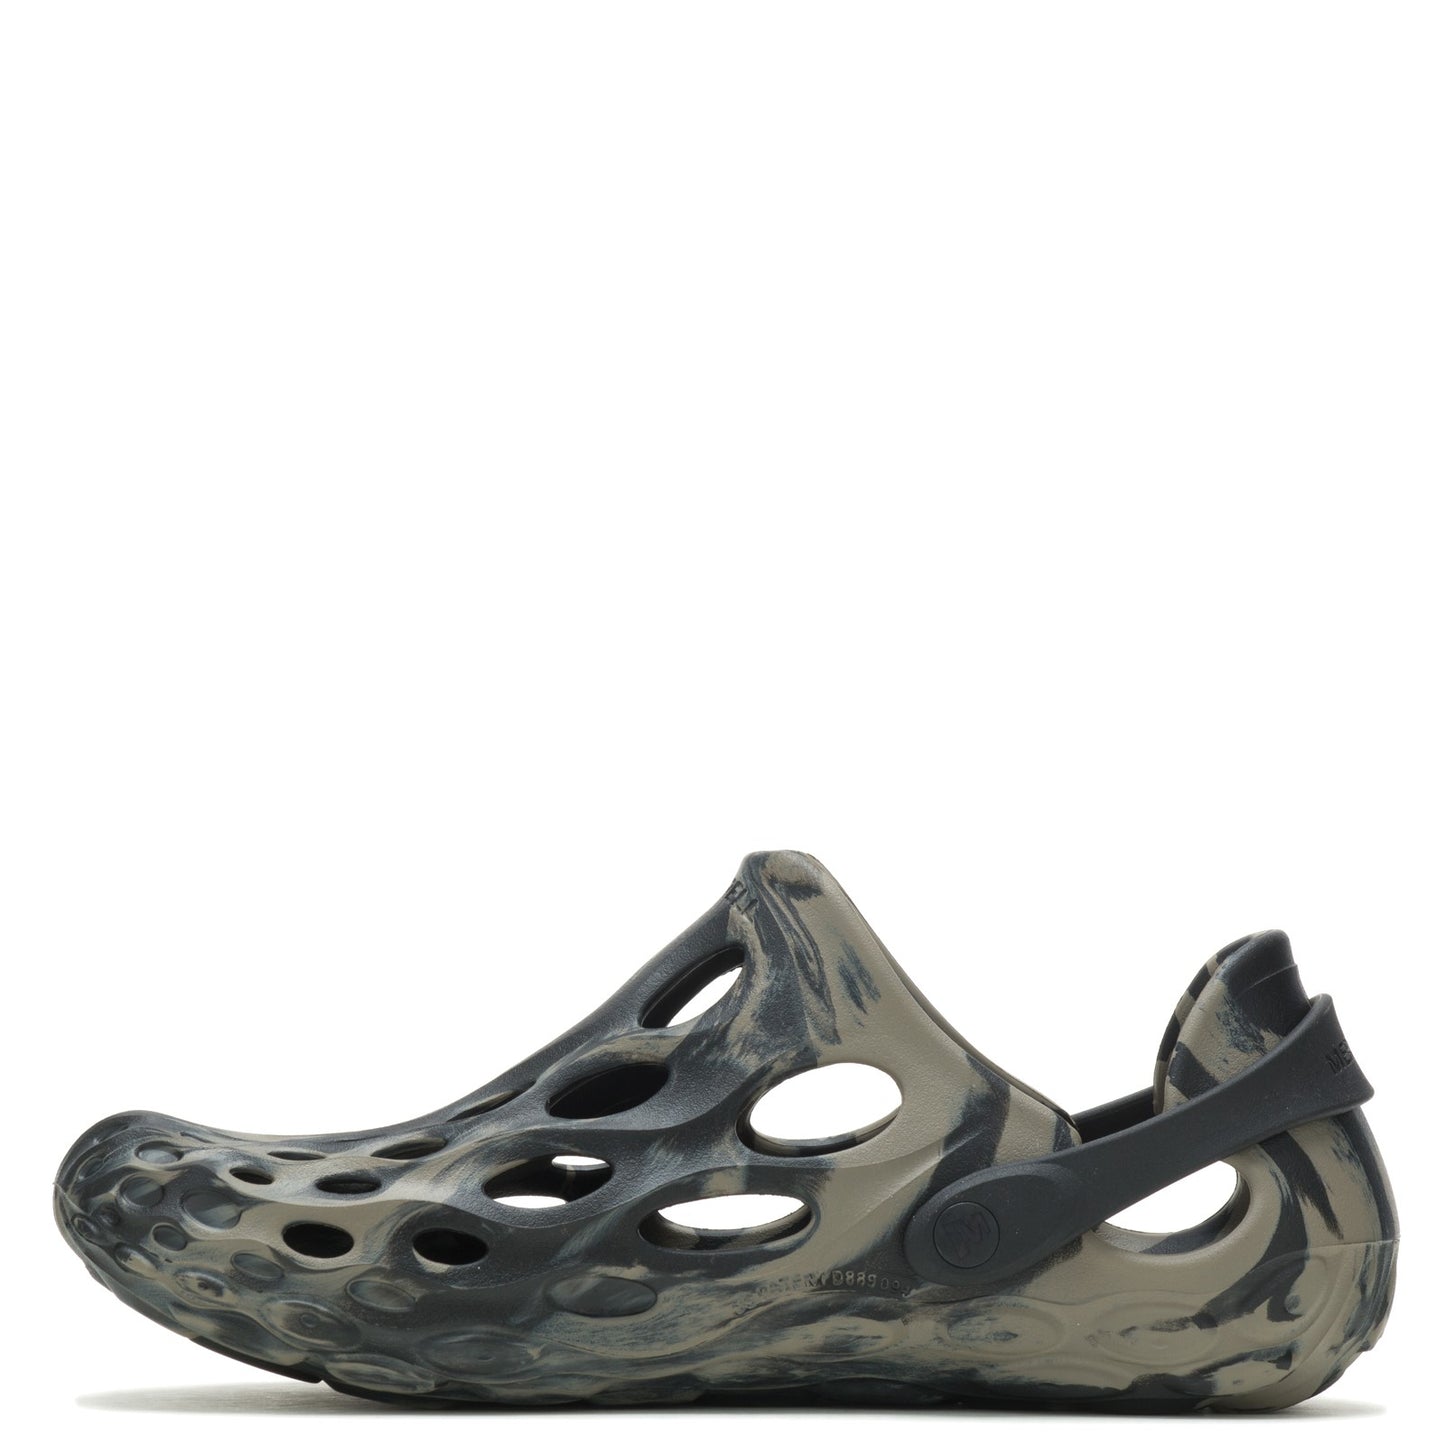 Peltz Shoes  Men's Merrell Hydro Moc Water Shoe BLACK SWIRL J003743